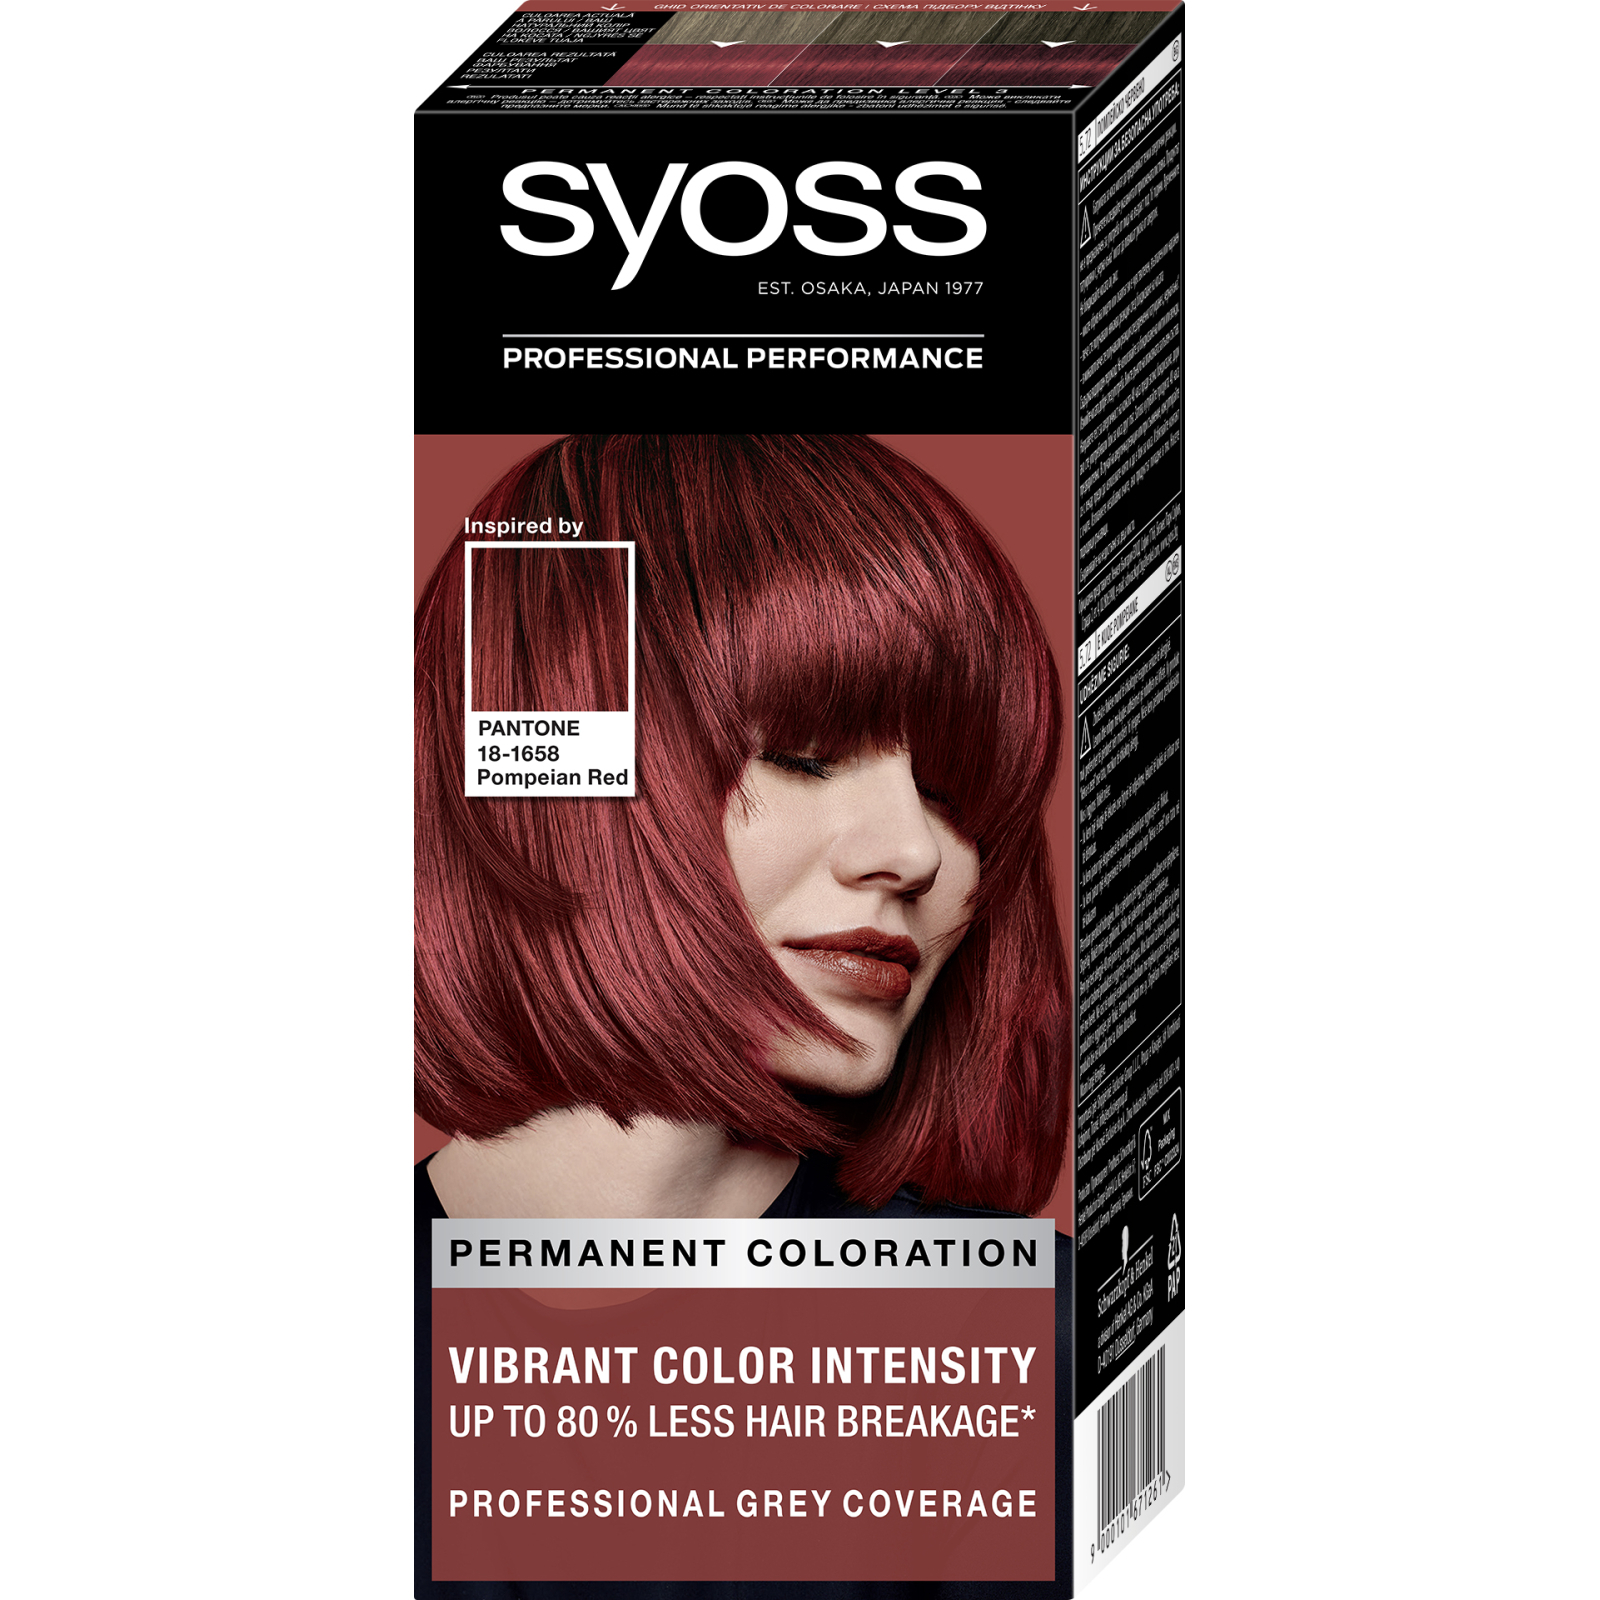 Краска для волос Syoss 8-7 Карамельный блонд 115 мл (9000100633260)